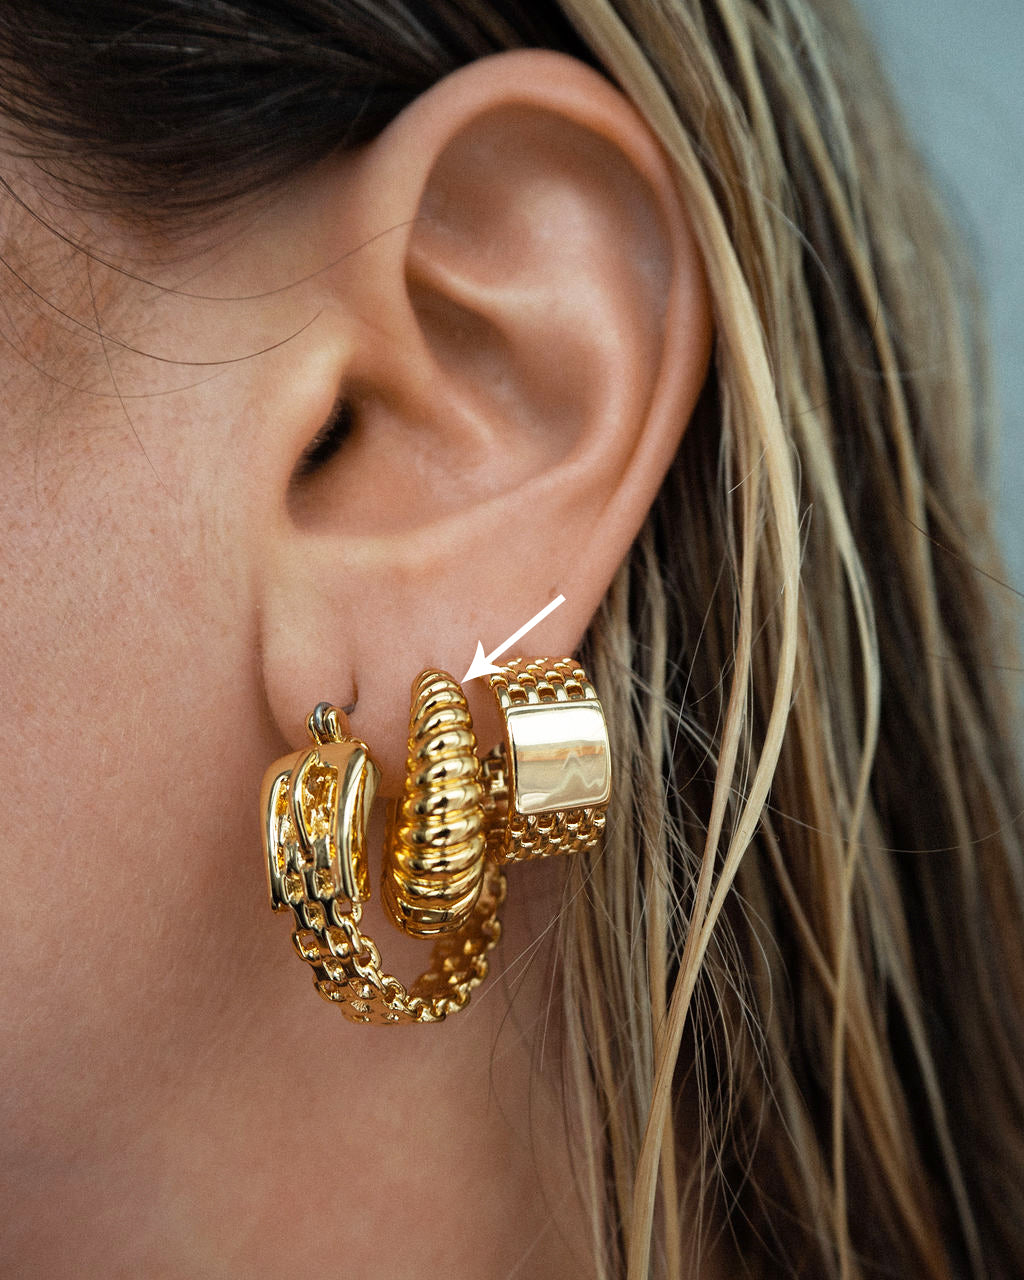 Luv Aj Ridged Marbella Teardrop Hoop Earrings in Polished 14k Gold Plated